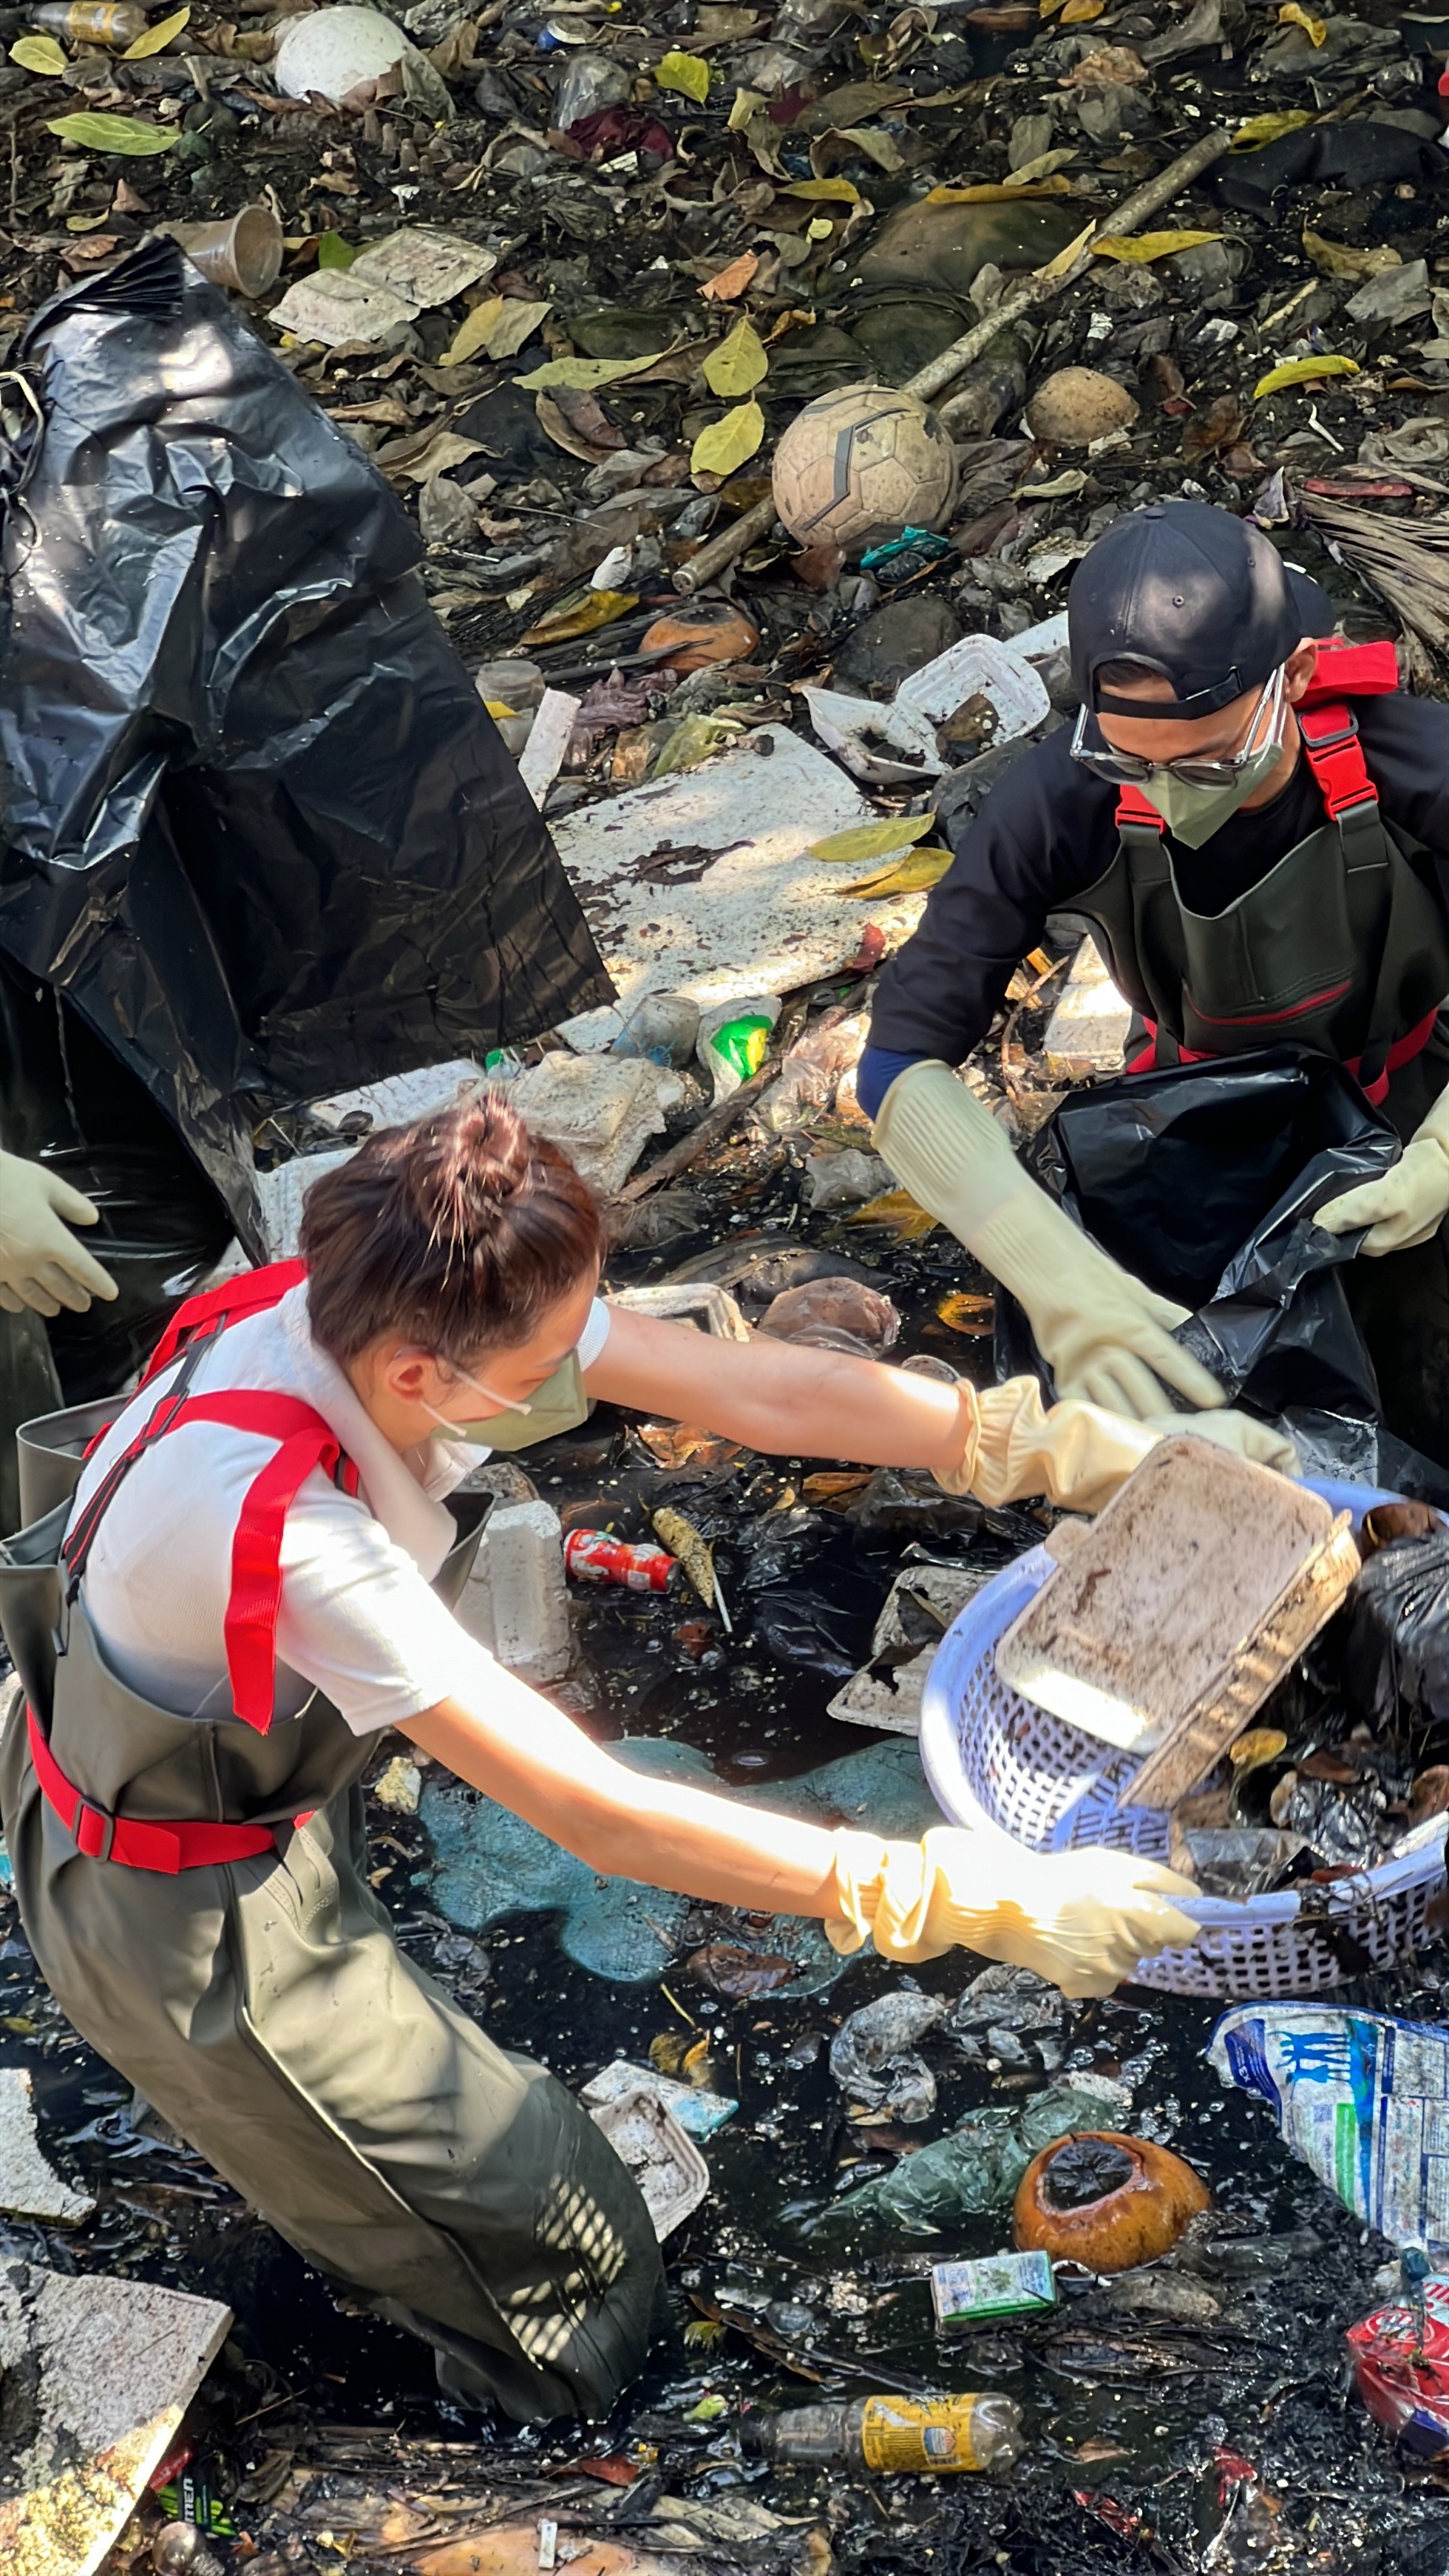 Kênh mương ngập rác thải được Hoa hậu Thuỳ Tiên và nhóm bạn trẻ dọn sạch. Ảnh: Nhân vật cung cấp.